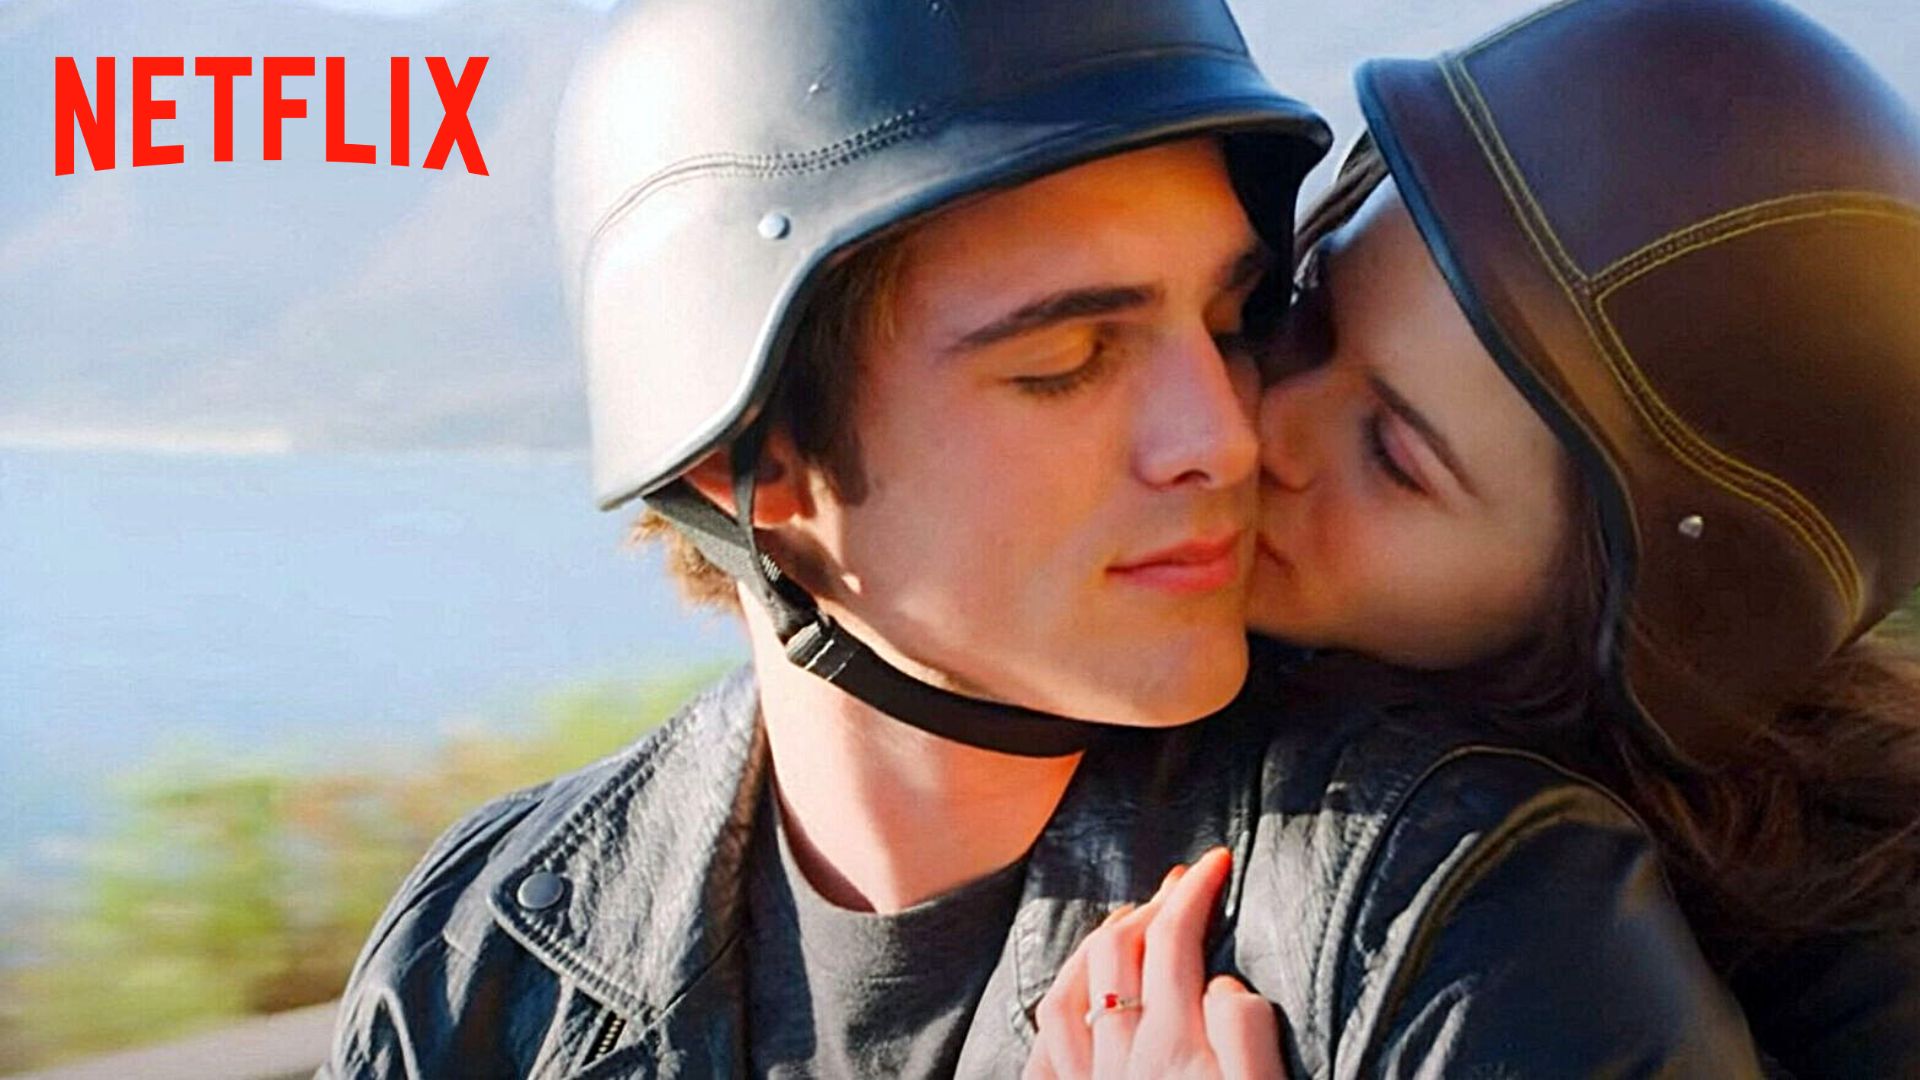 "Ces films sont ridicules" : une star de The Kissing Booth balance sur la trilogie Netflix